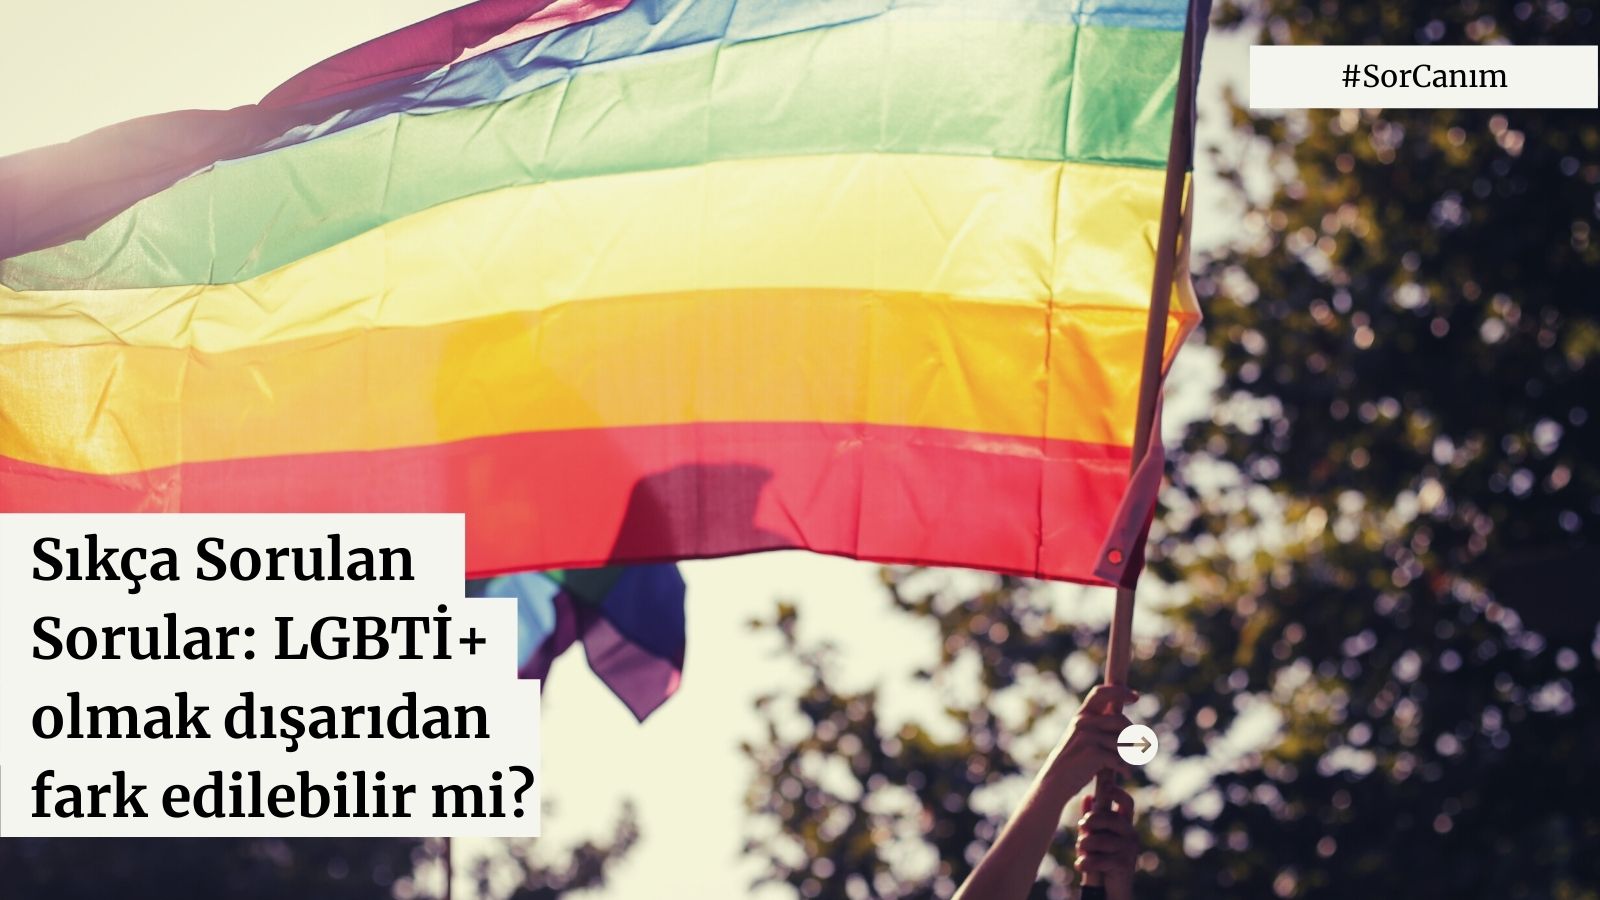 Sor canım: LGBTİ+ olmak dışarıdan fark edilebilir mi? | Kaos GL - LGBTİ+ Haber Portalı